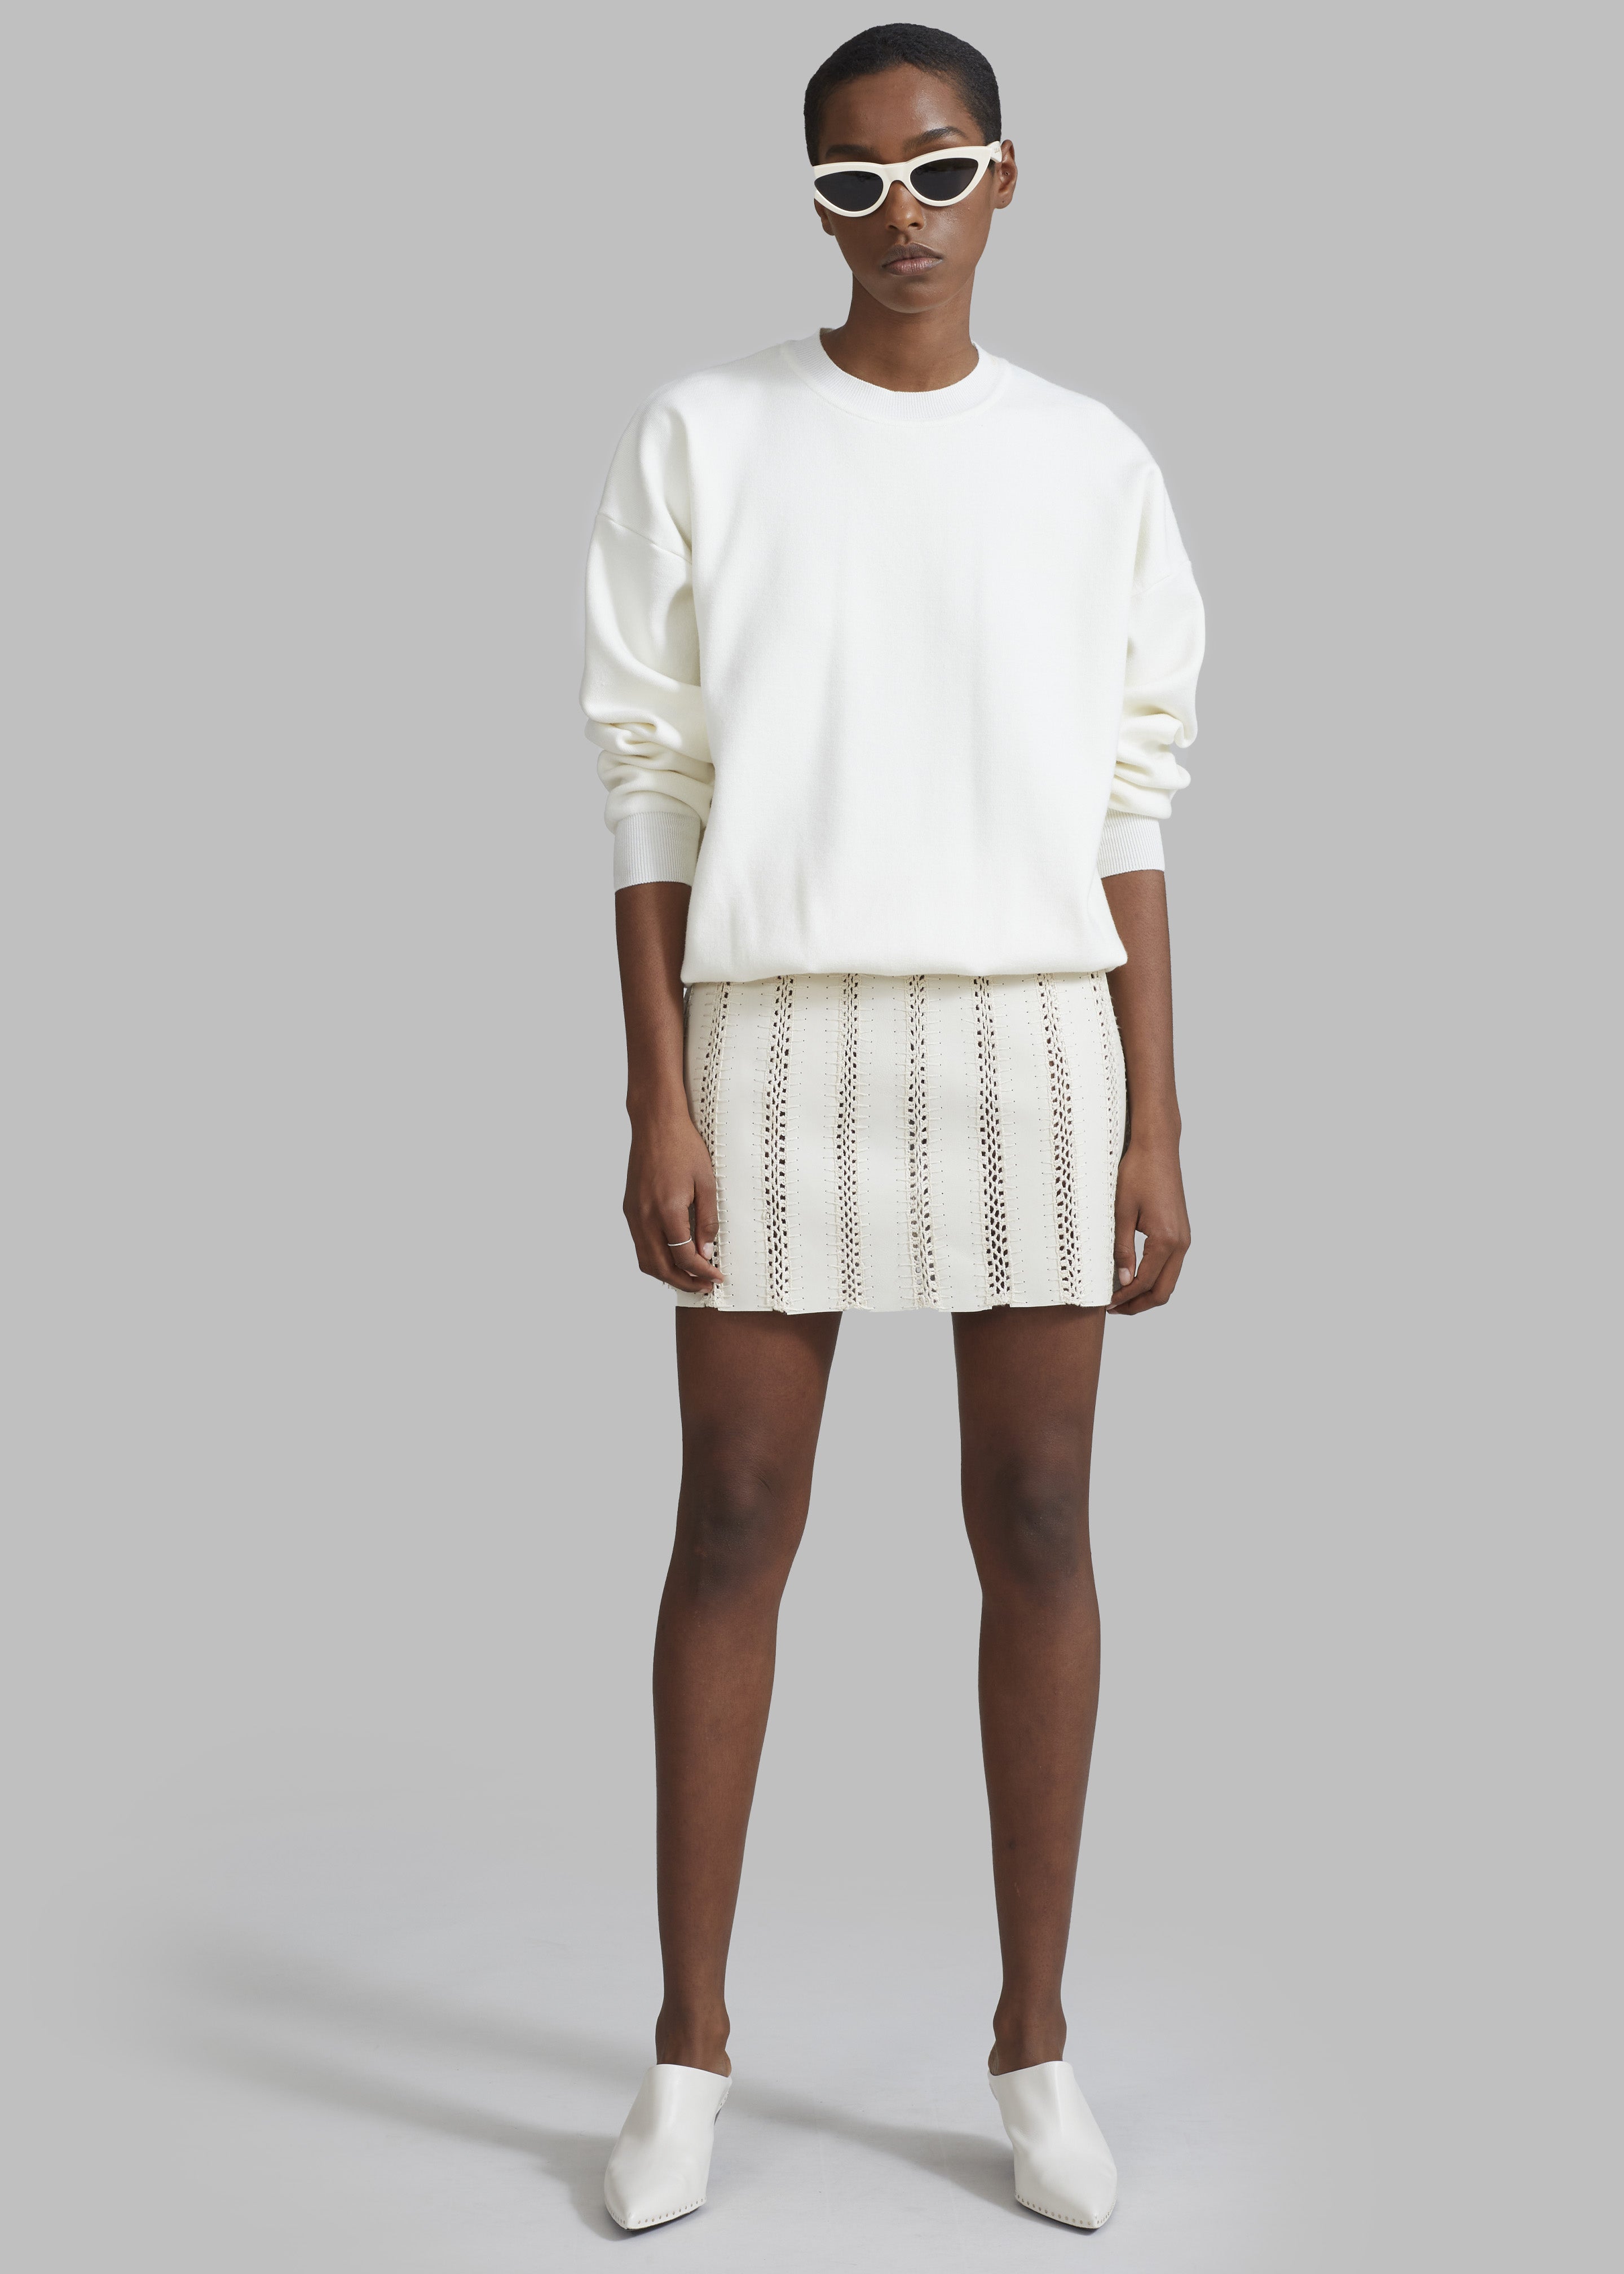 REMAIN Leather Crochet Mini Skirt - Egret - 4